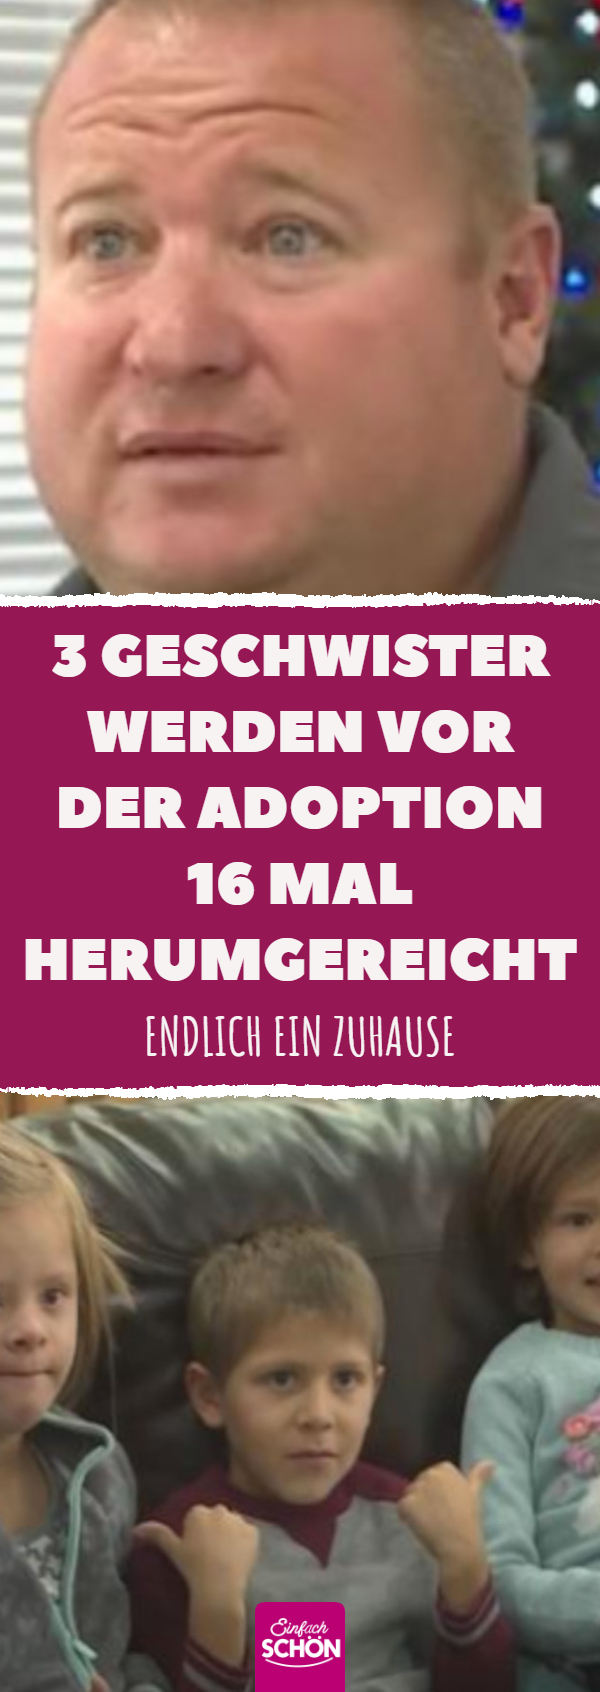 3 Geschwister werden vor der Adoption 16 Mal herumgereicht